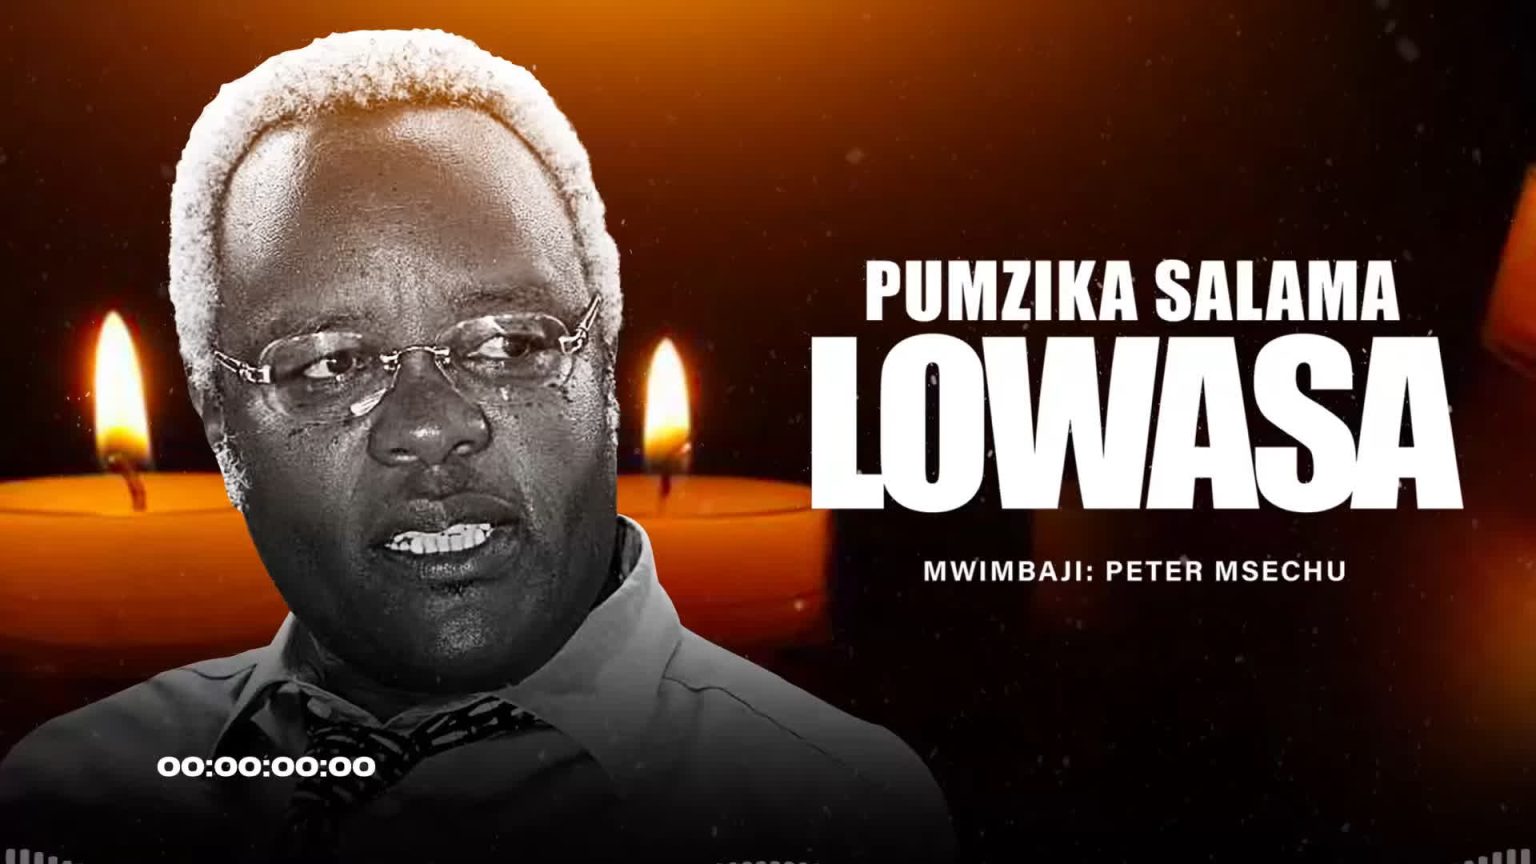  Peter Msechu – Pumzika Salama Lowasa